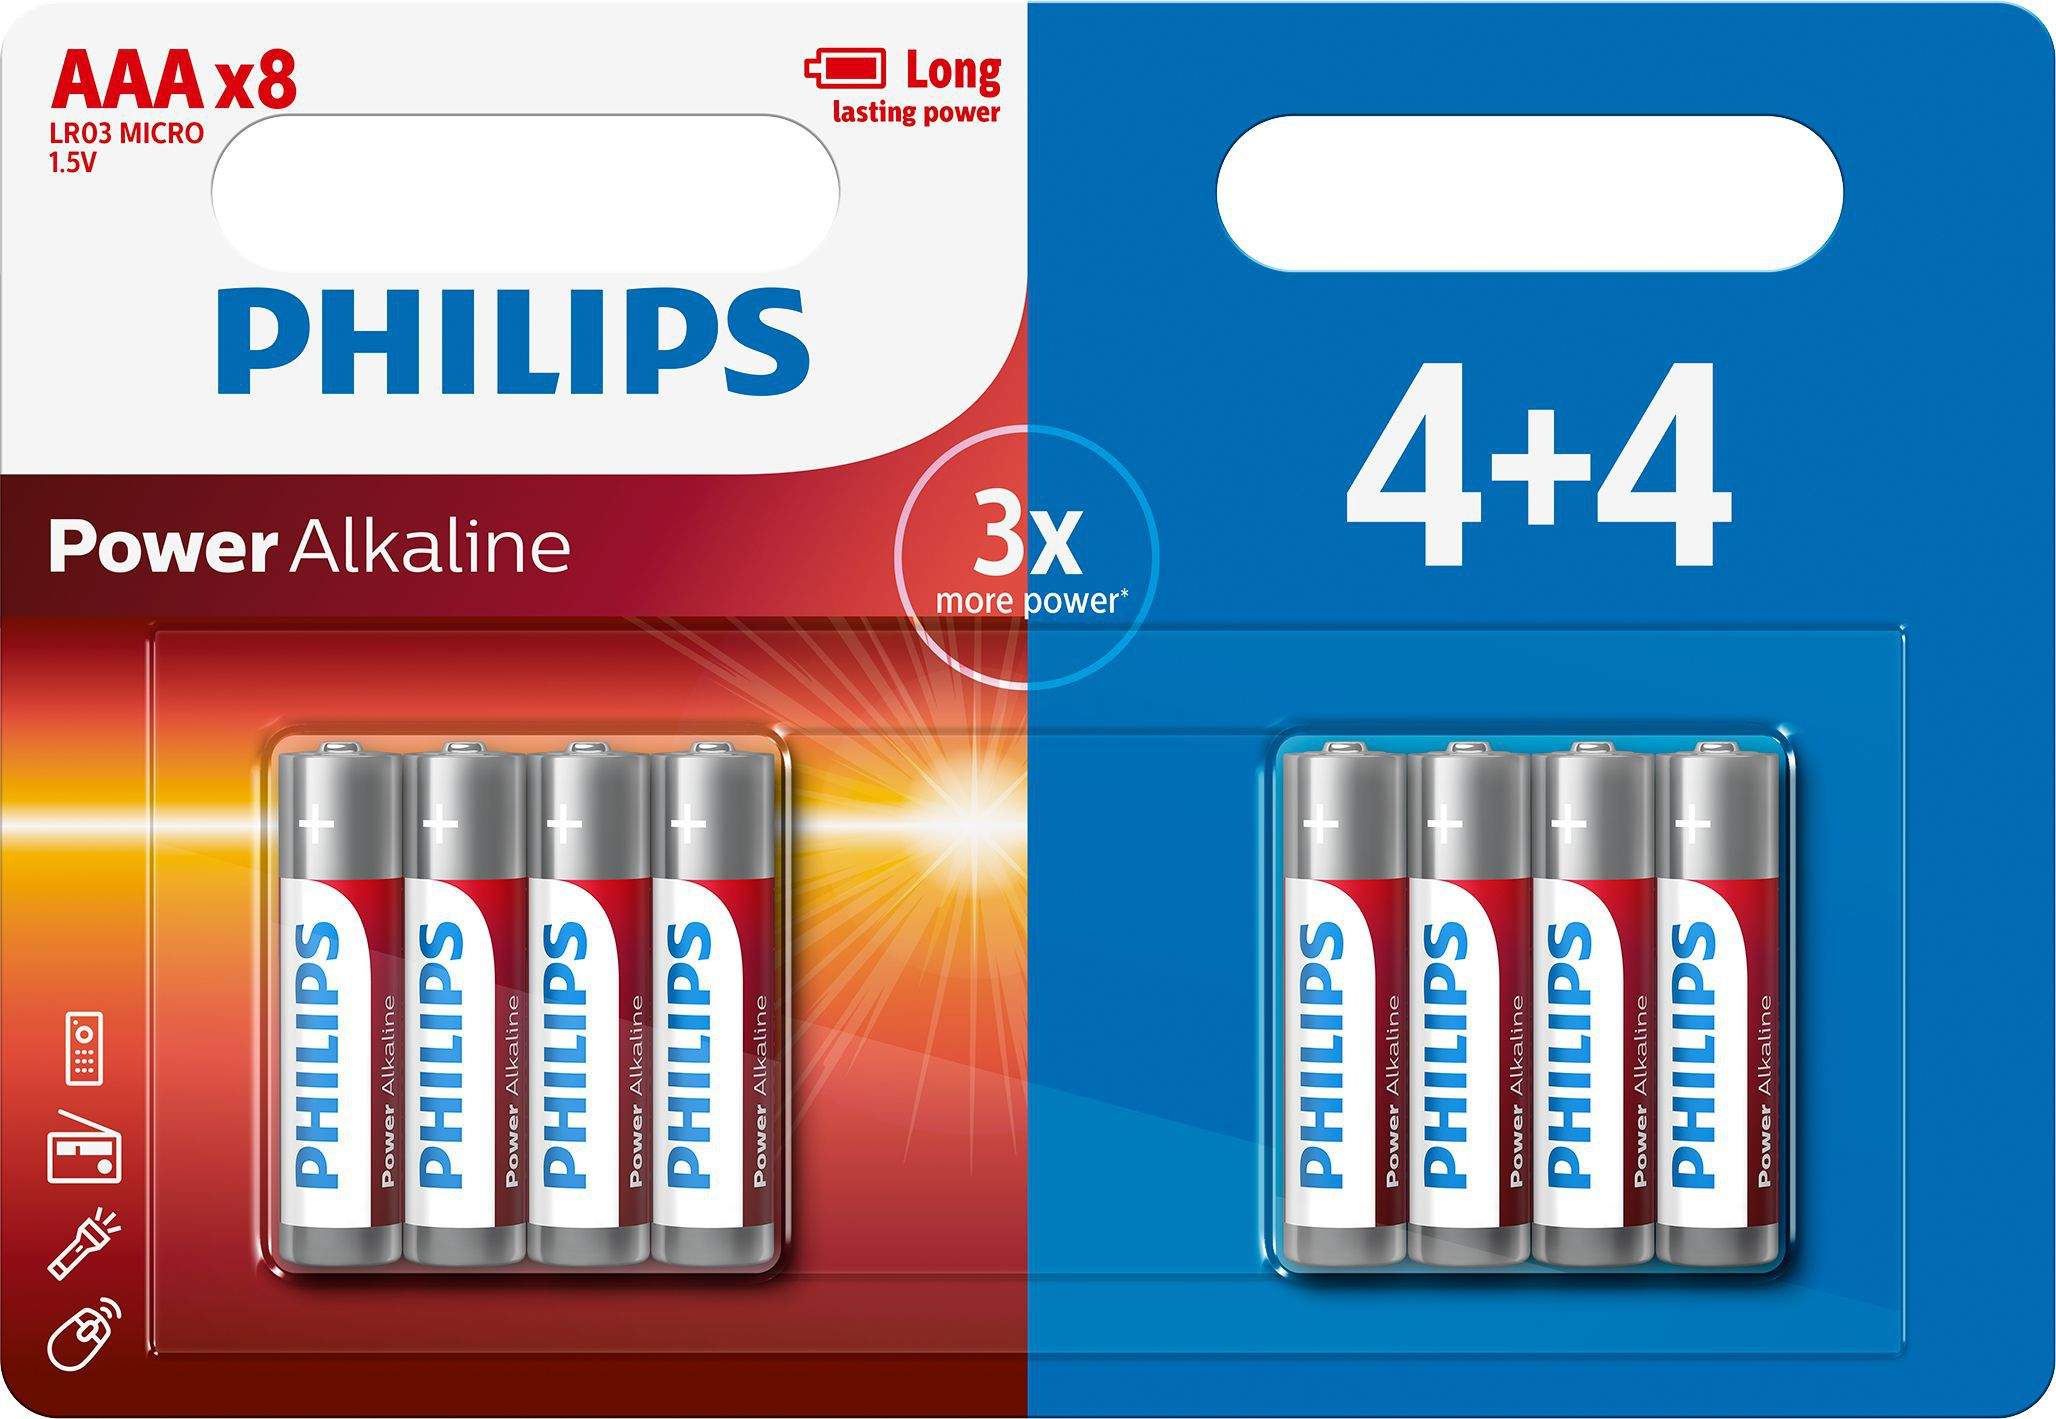 4+4 Piles Alcalines AAA / LR03 Philips Power Alkaline